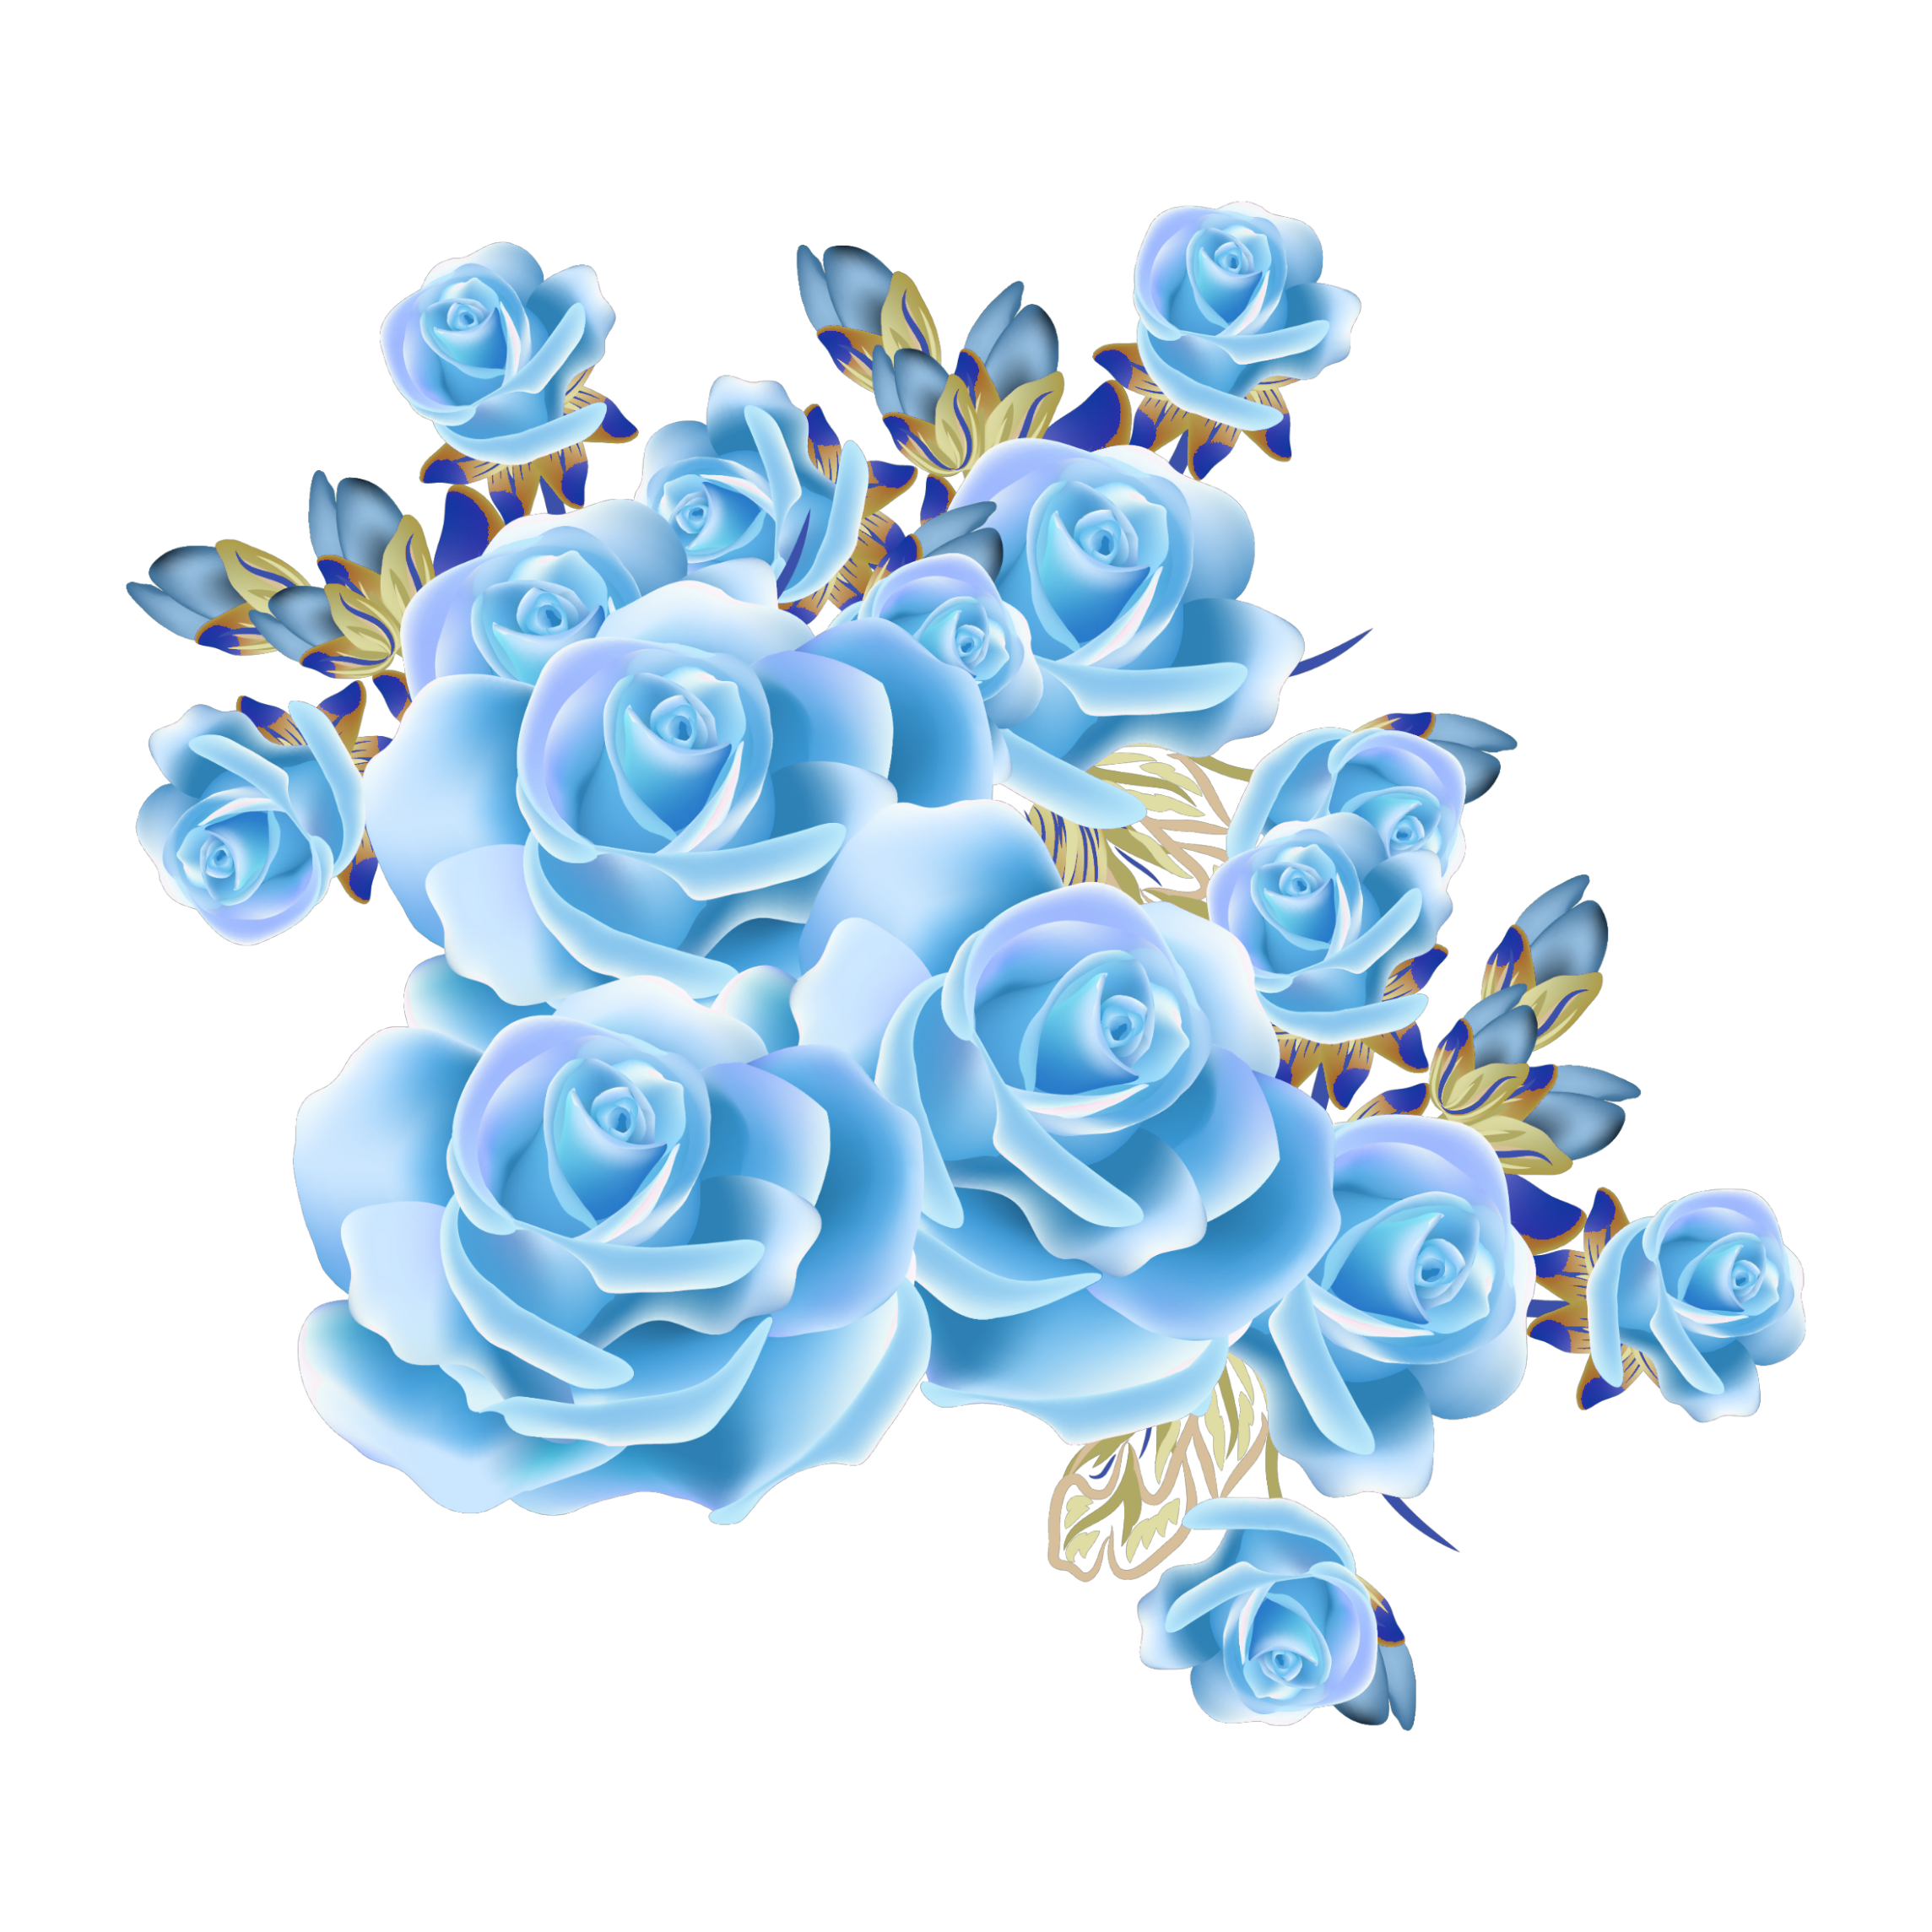 mq blue rose roses flowers flower...